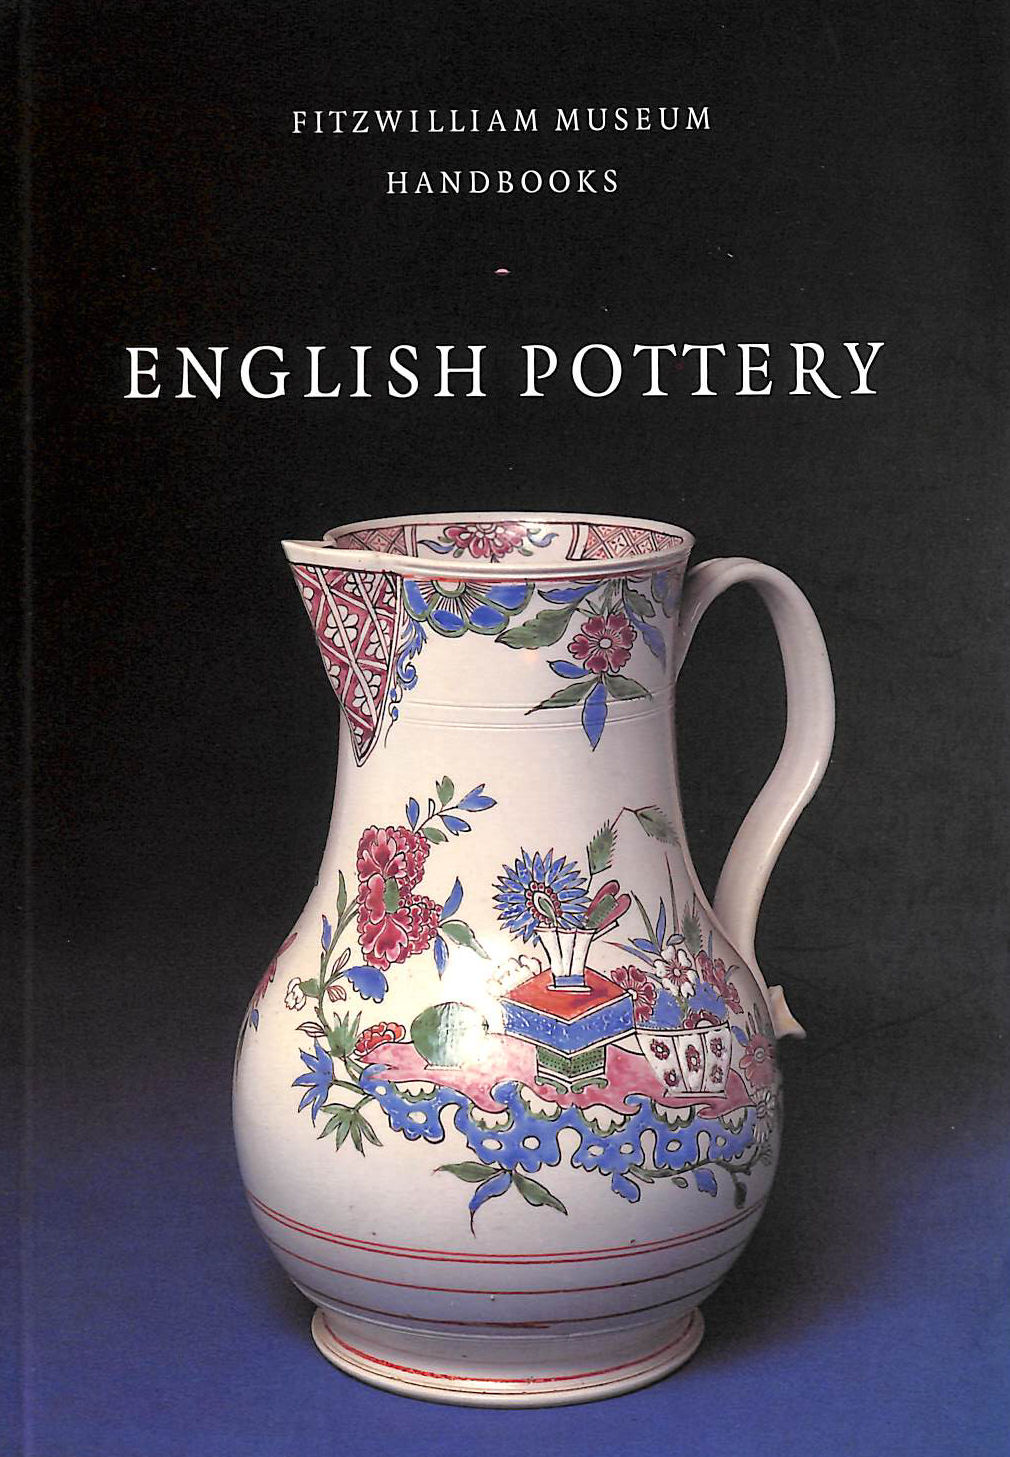 JULIA E. POOLE - English Pottery (Fitzwilliam Museum Handbooks)